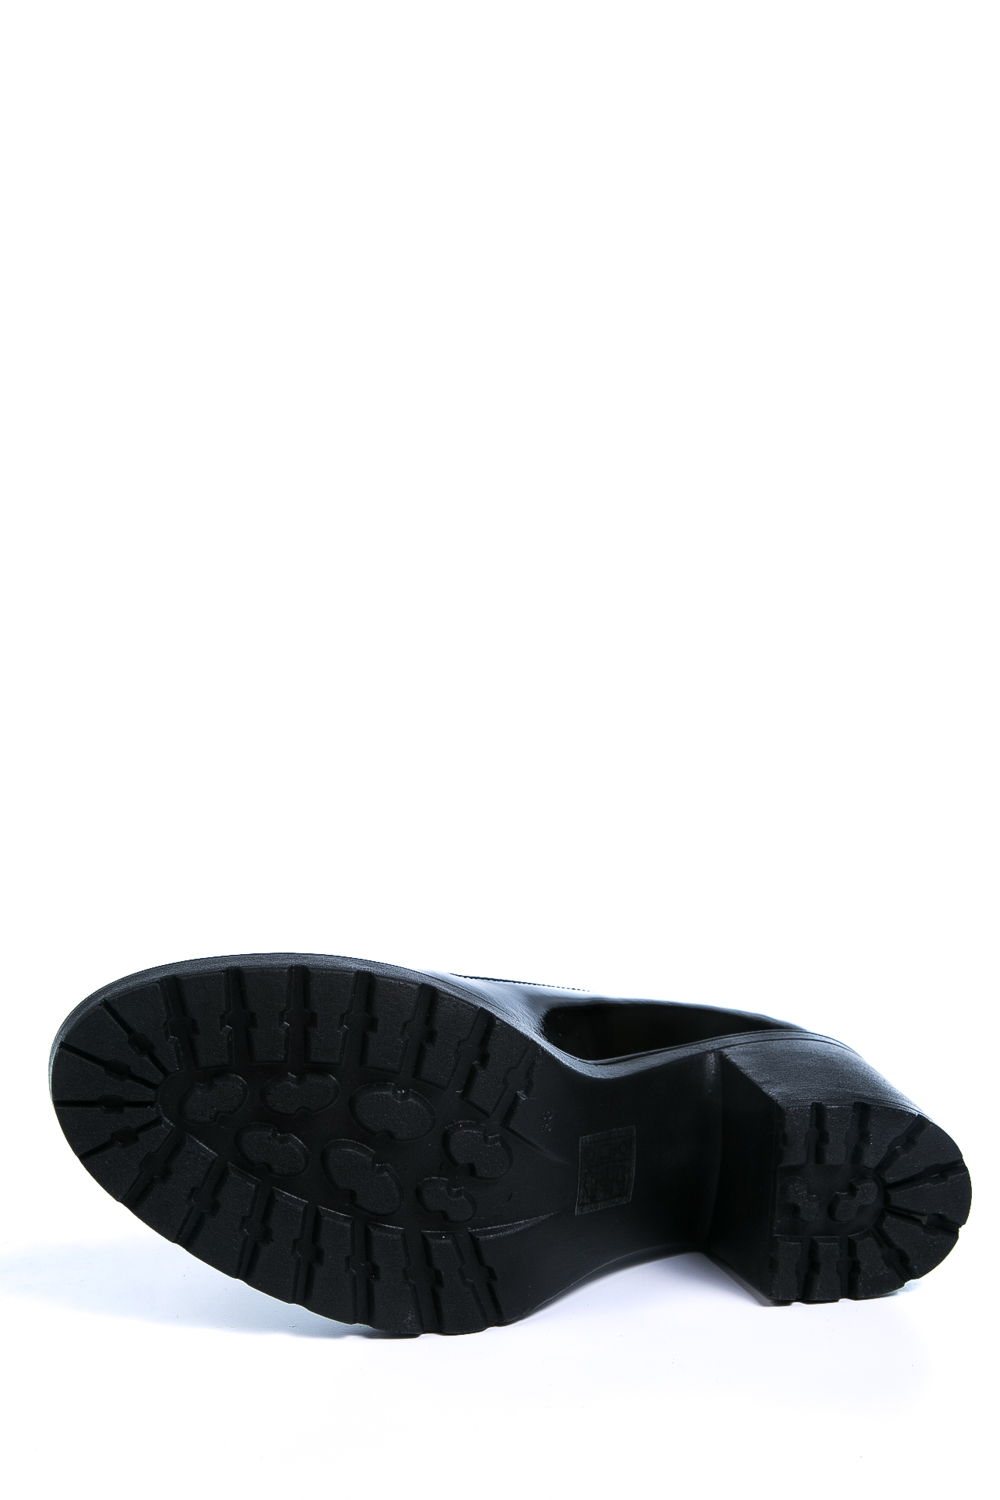 Туфли MILANA 161415-1-7101 черный - купить 3590